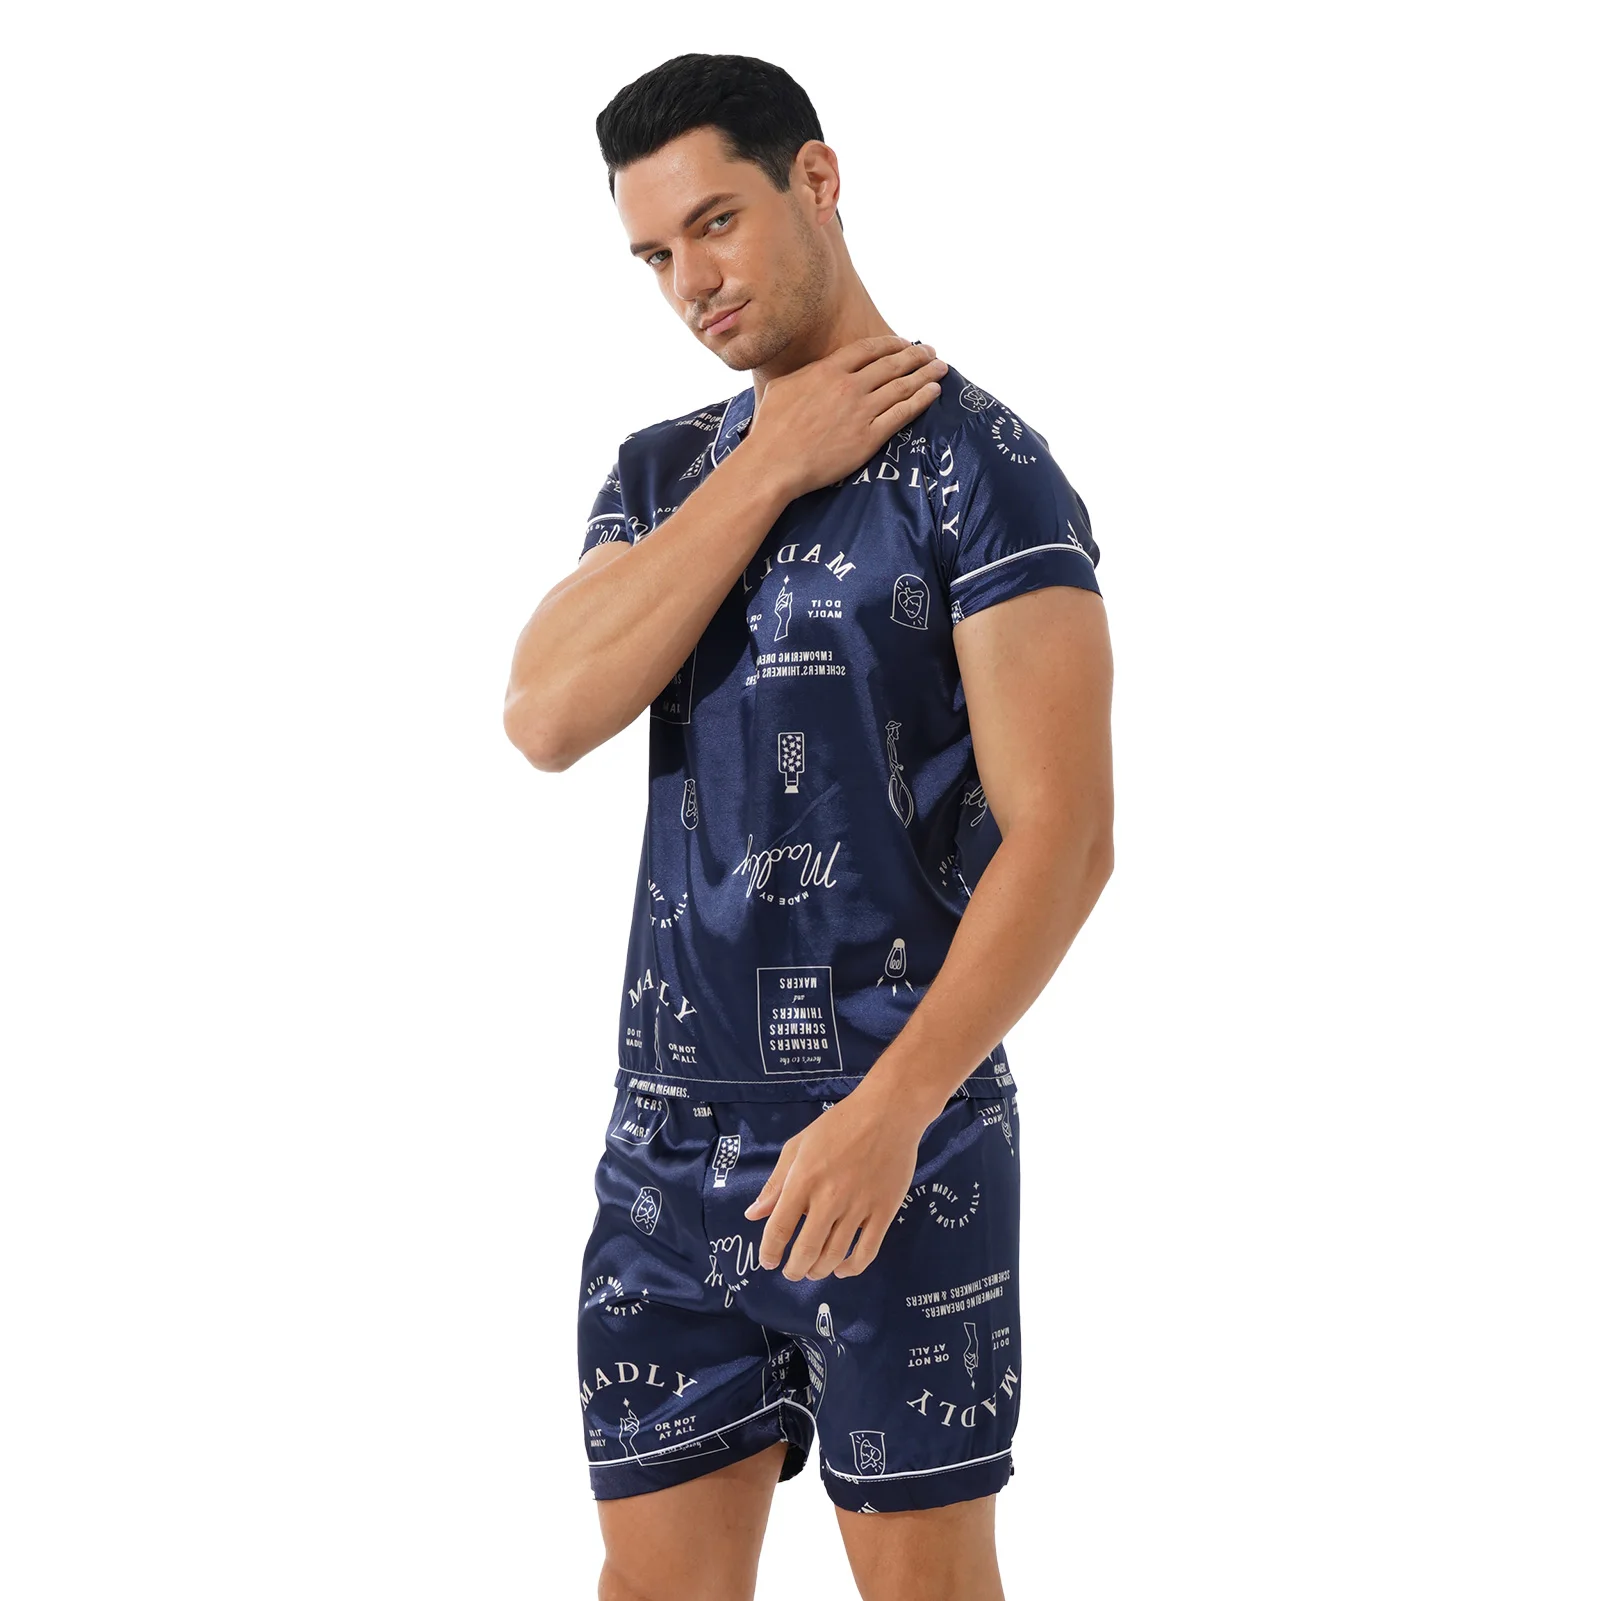 Summer Luxury Pajama Suit Men Fashion Satin Silk Pajamas Sets Sleepwear Family Pijama Pyjama Night Suit Men Casual Home Clothing men satin pajamas